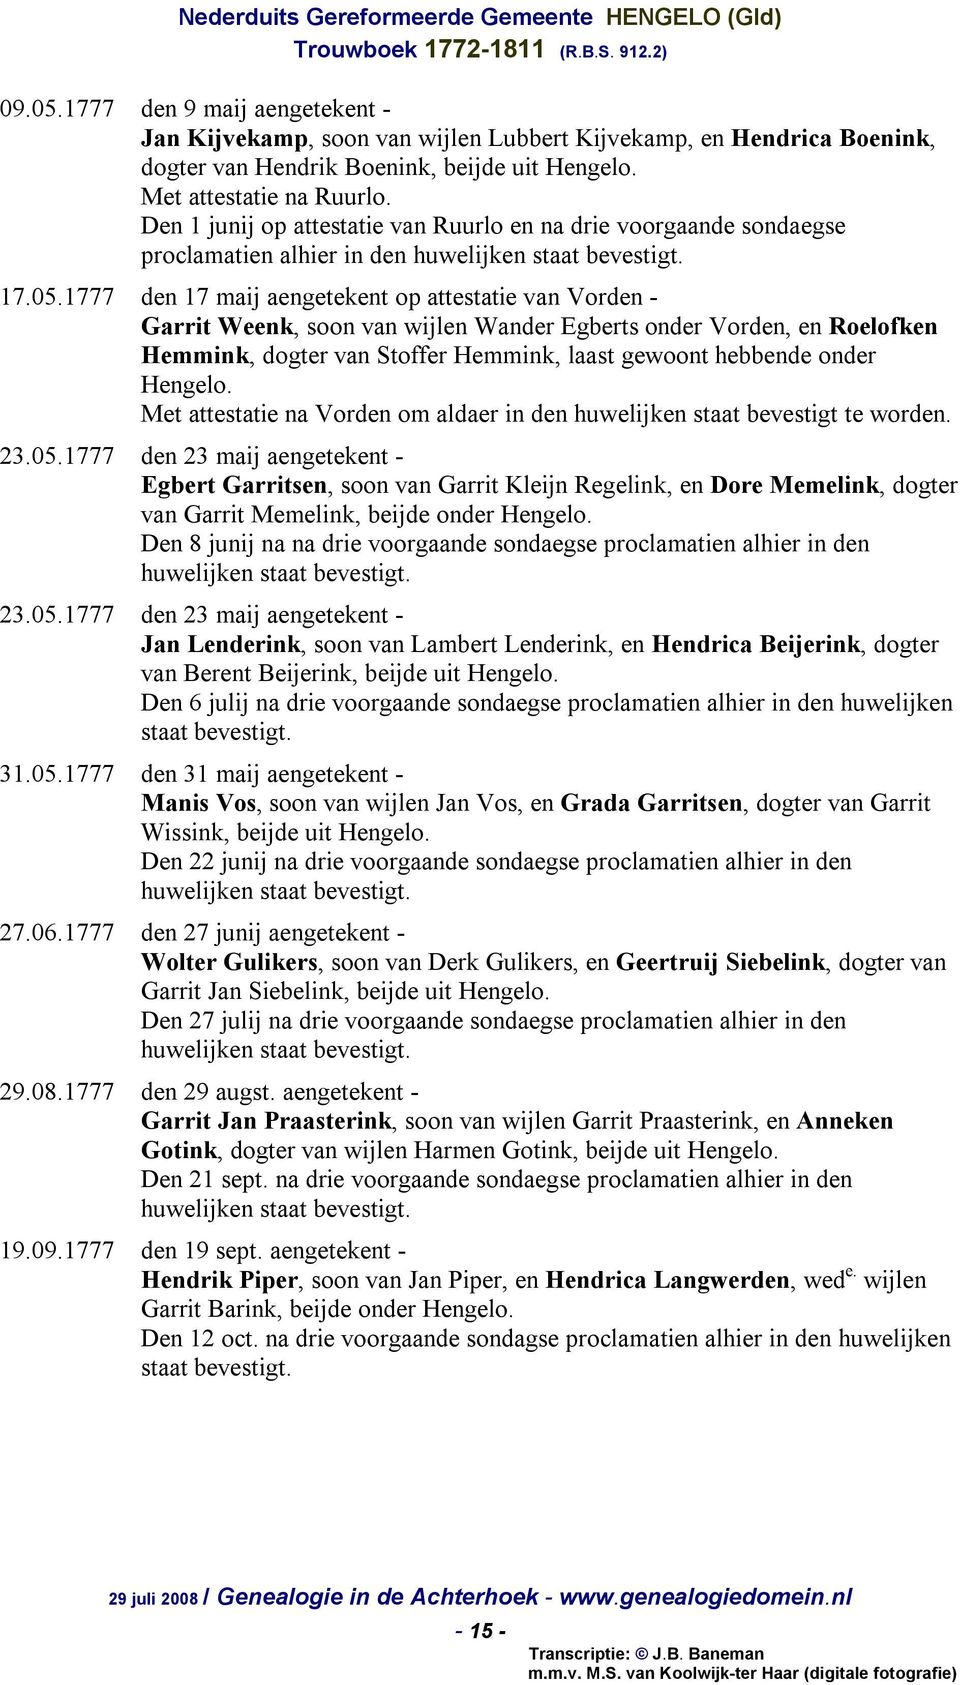 1777 den 17 maij aengetekent op attestatie van Vorden - Garrit Weenk, soon van wijlen Wander Egberts onder Vorden, en Roelofken Hemmink, dogter van Stoffer Hemmink, laast gewoont hebbende onder